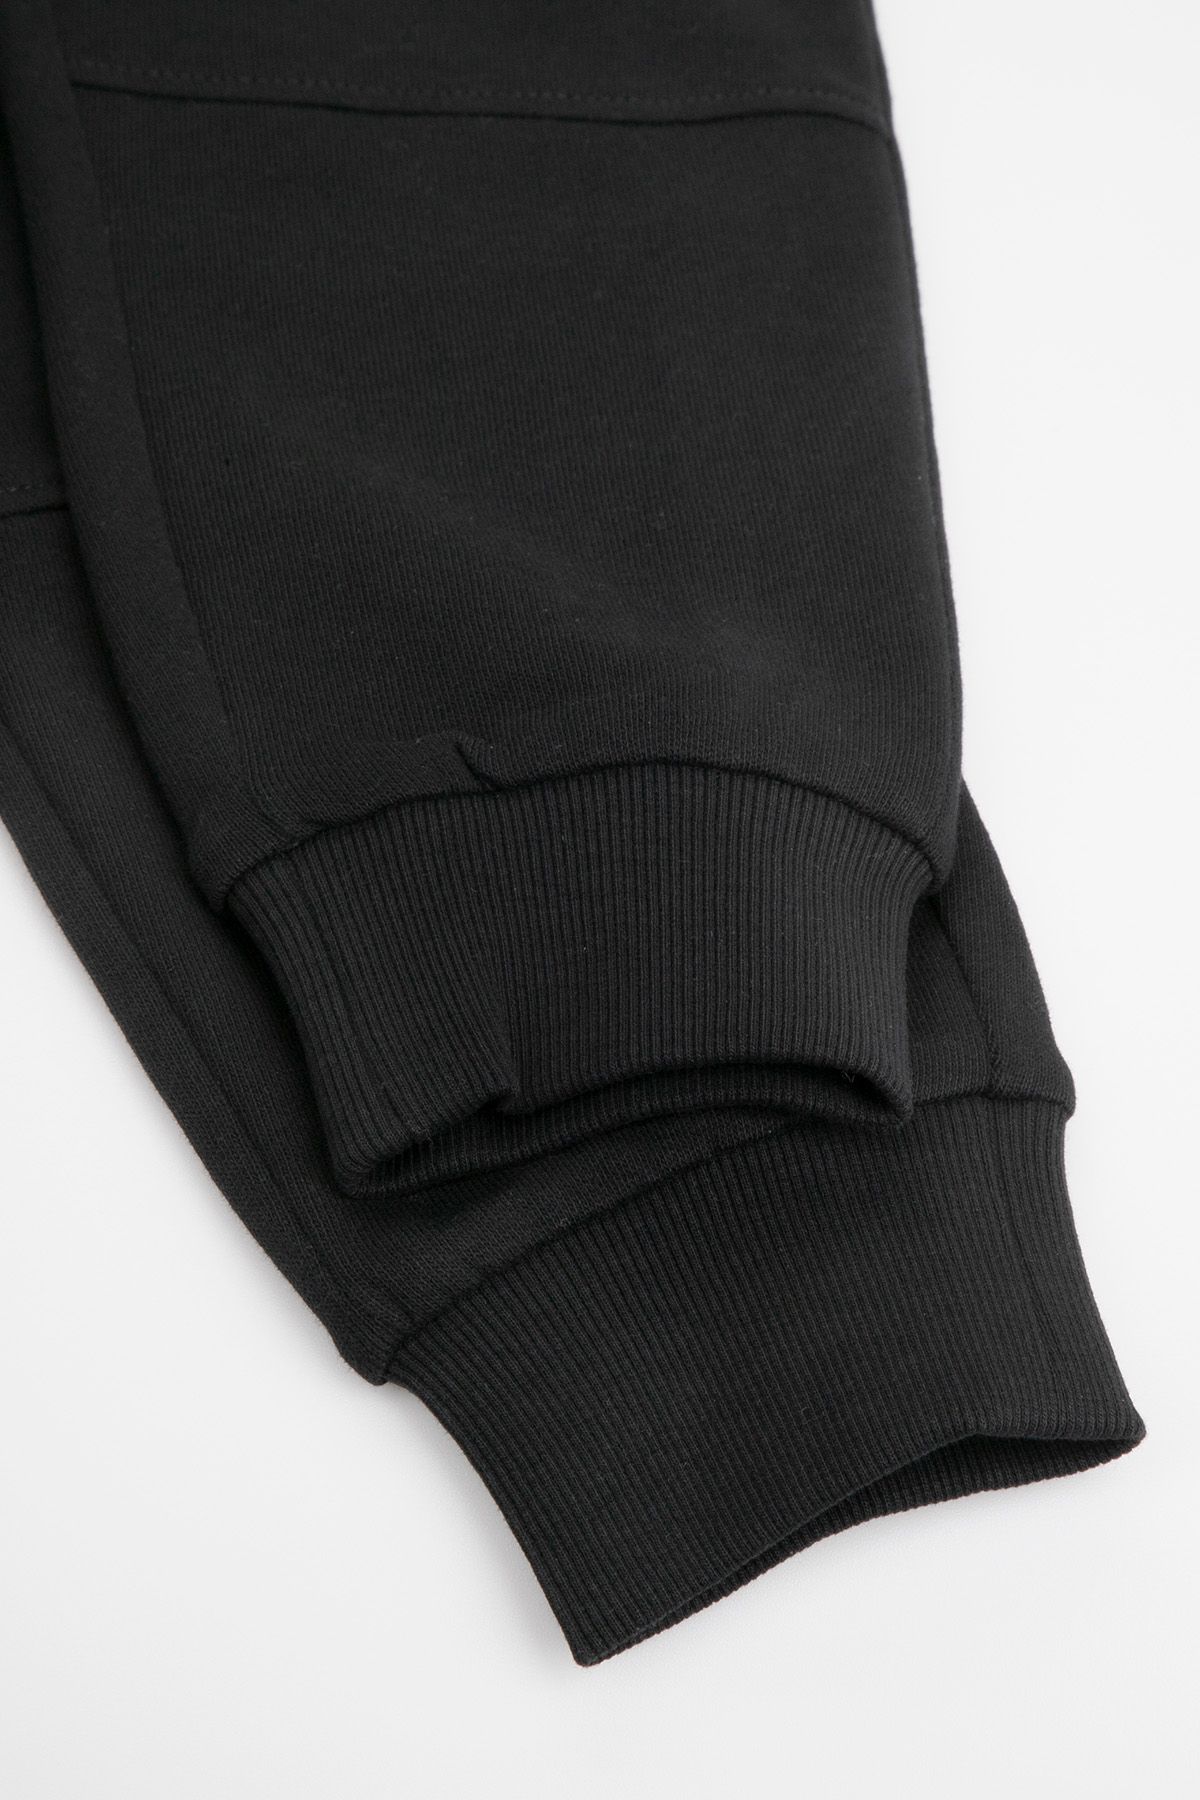 Spodnie dresowe czarne z ozdobną gumą w pasie o fasonie SLIM 2218342